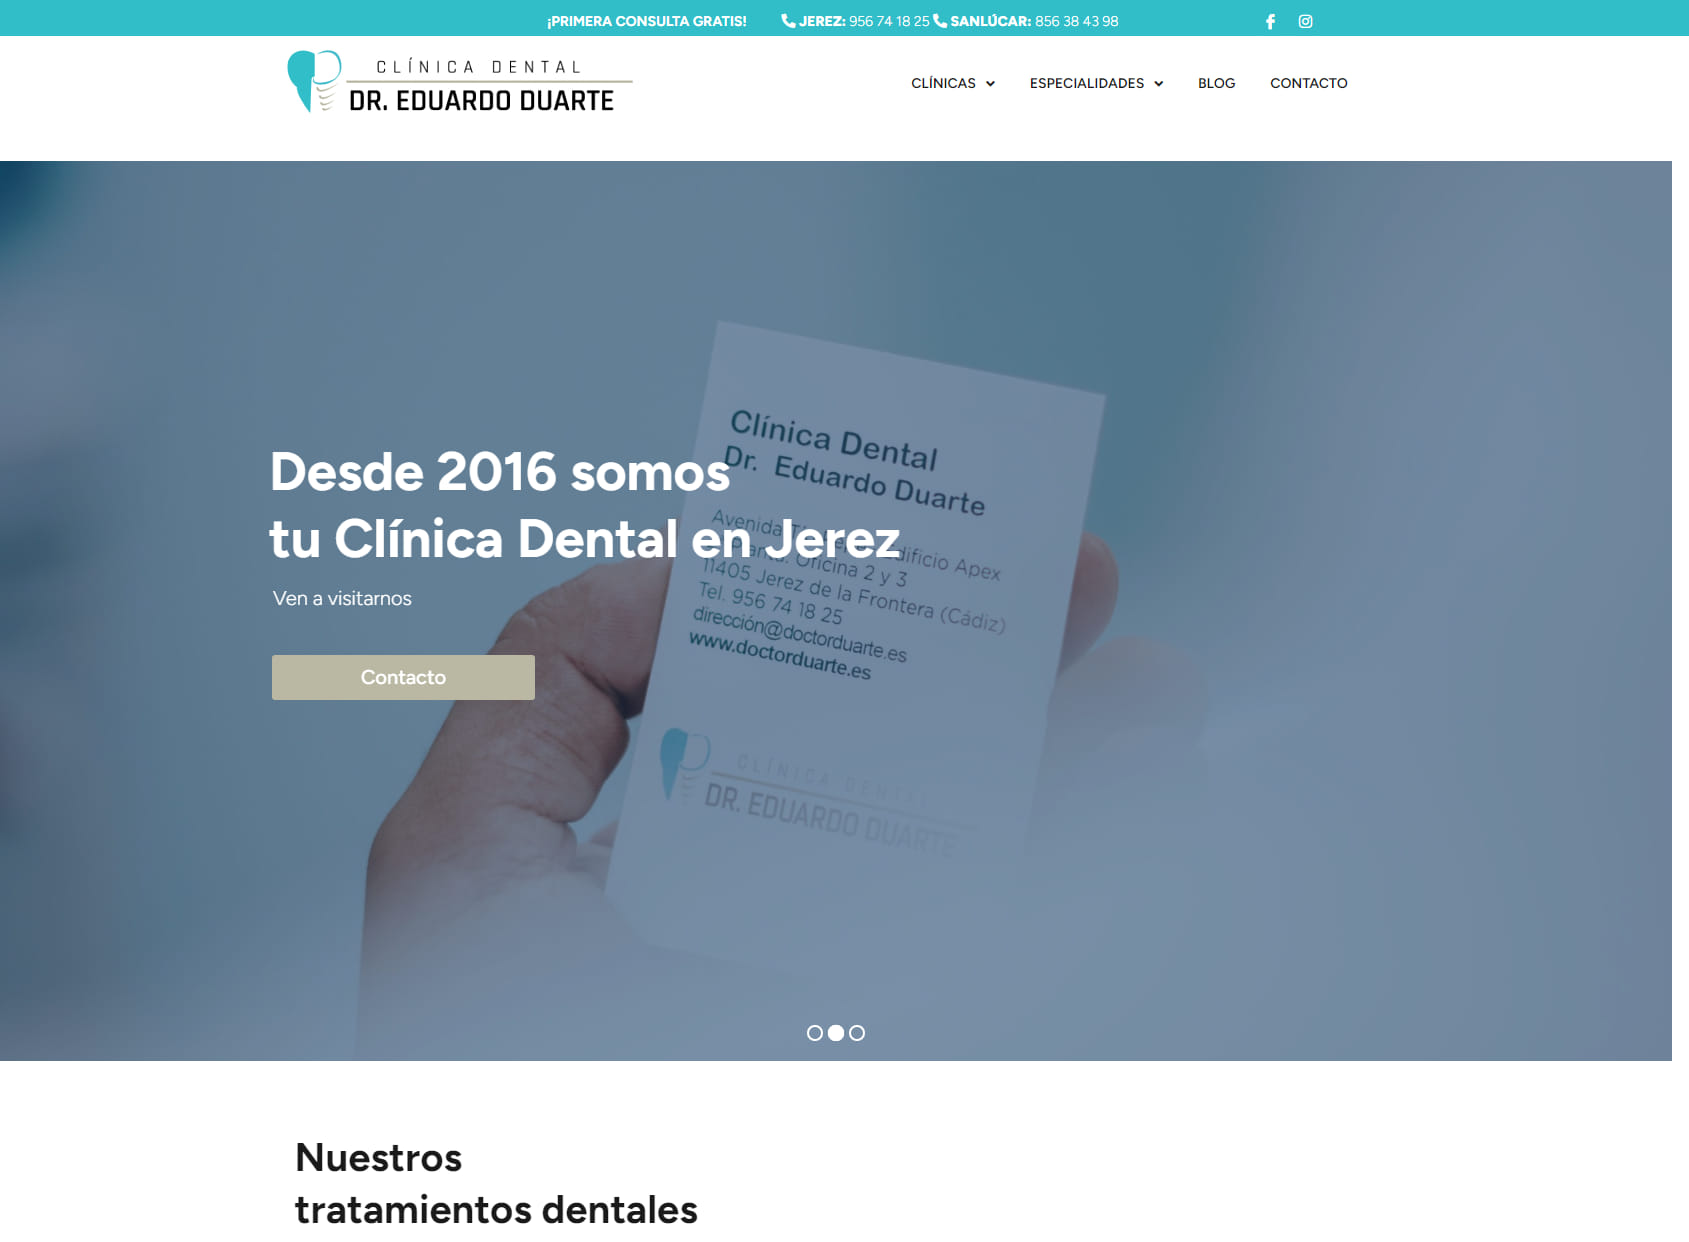 Clínica Dental Eduardo Duarte Sanlúcar